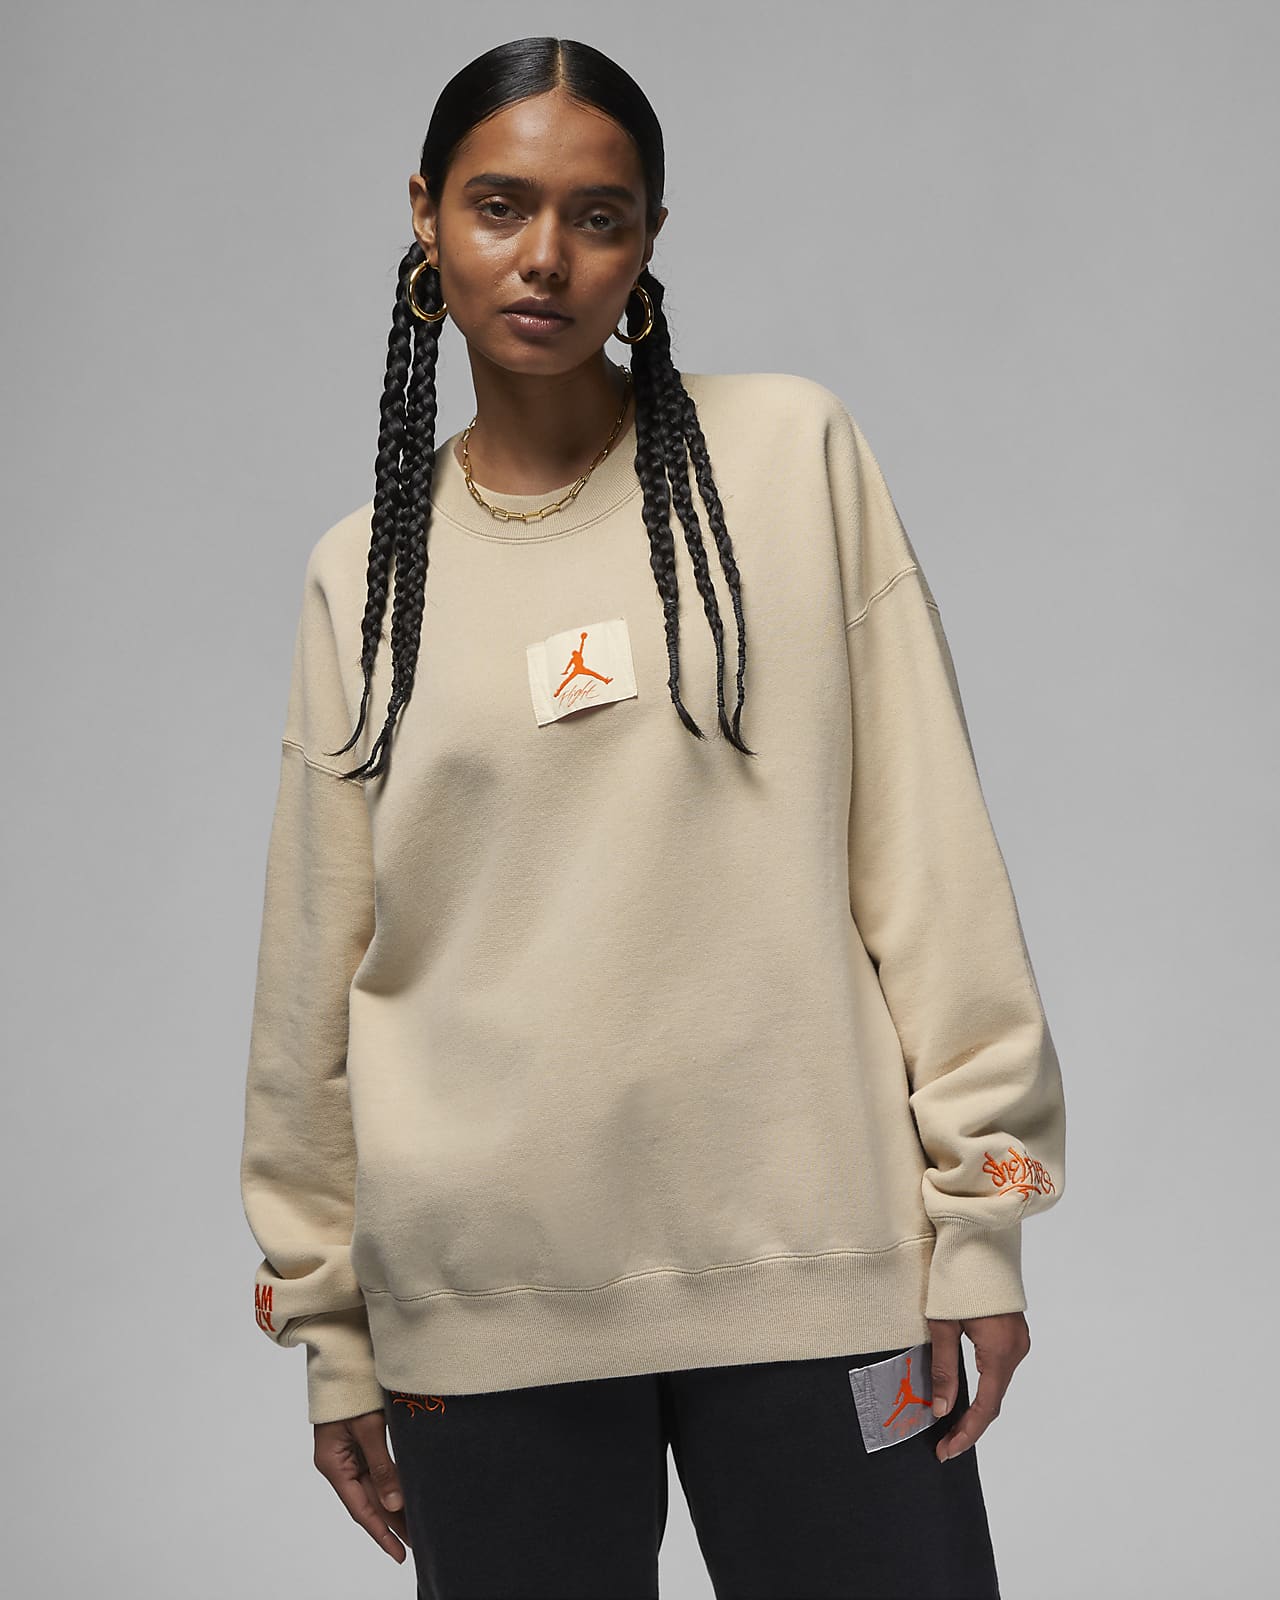 Jordan x Shelflife Women's Sweatshirt. Nike.com